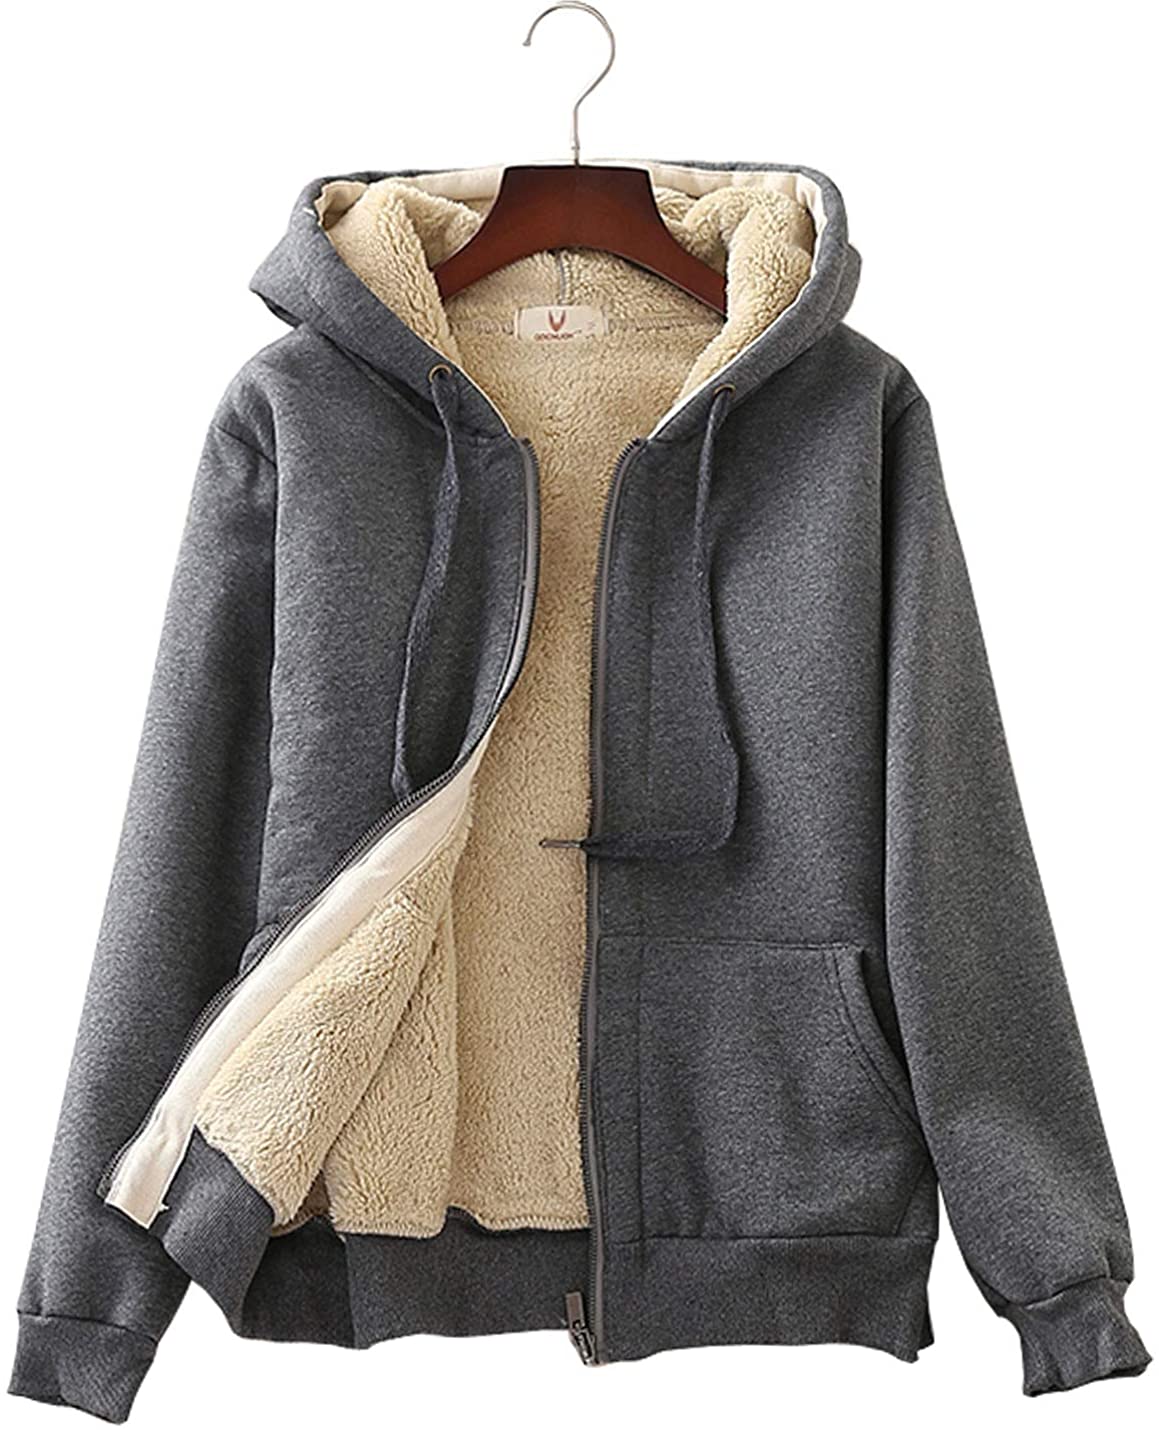 Flygo Men's Sherpa Hoodie Jacket Fleece Lined Zip Up Warm Hoodies  Sweatshirt Winter Zipper Sweater Hooded Coat(ArmyGreen-XS) at  Men's  Clothing store